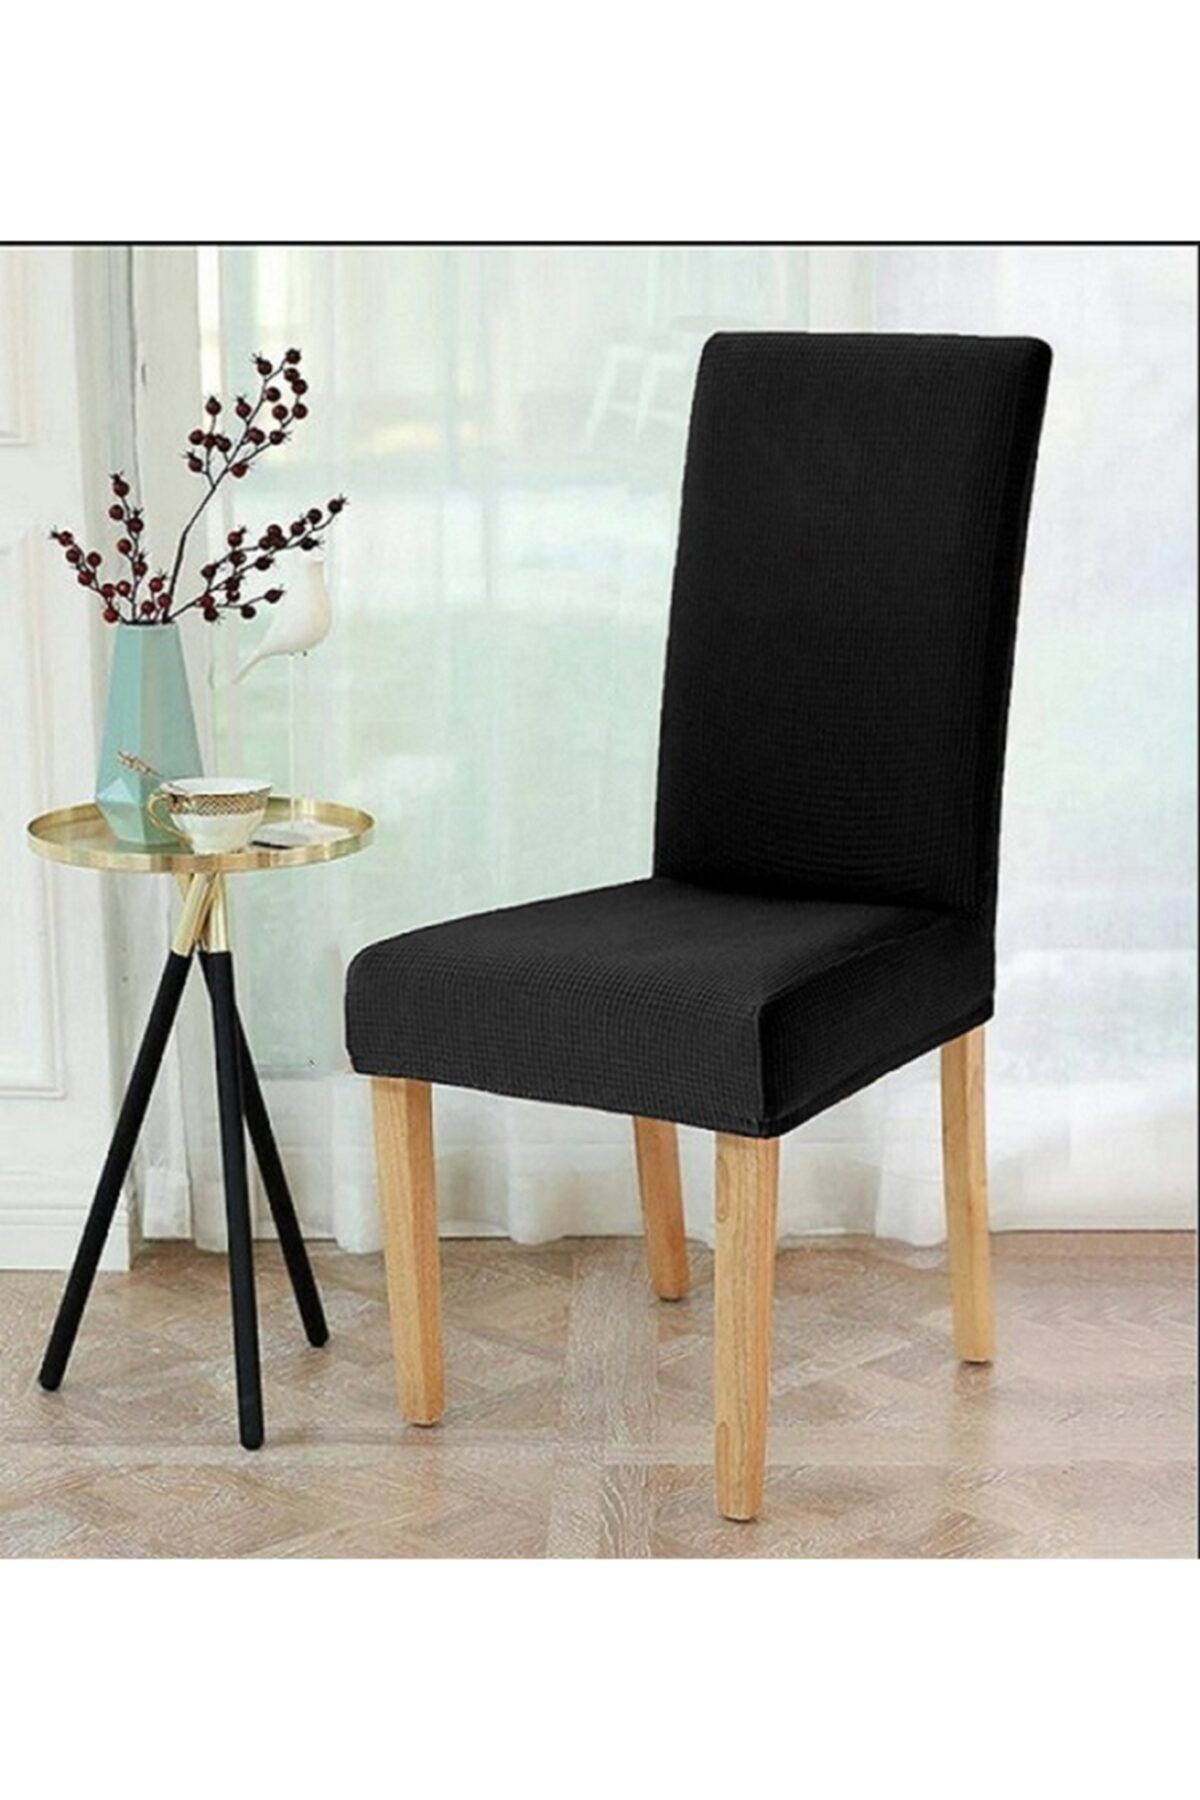 elgeyar Likrali Sandalye Örtüsü, Sandalye Kılıfı, Lastikli ,standart (1 ADET)siyah